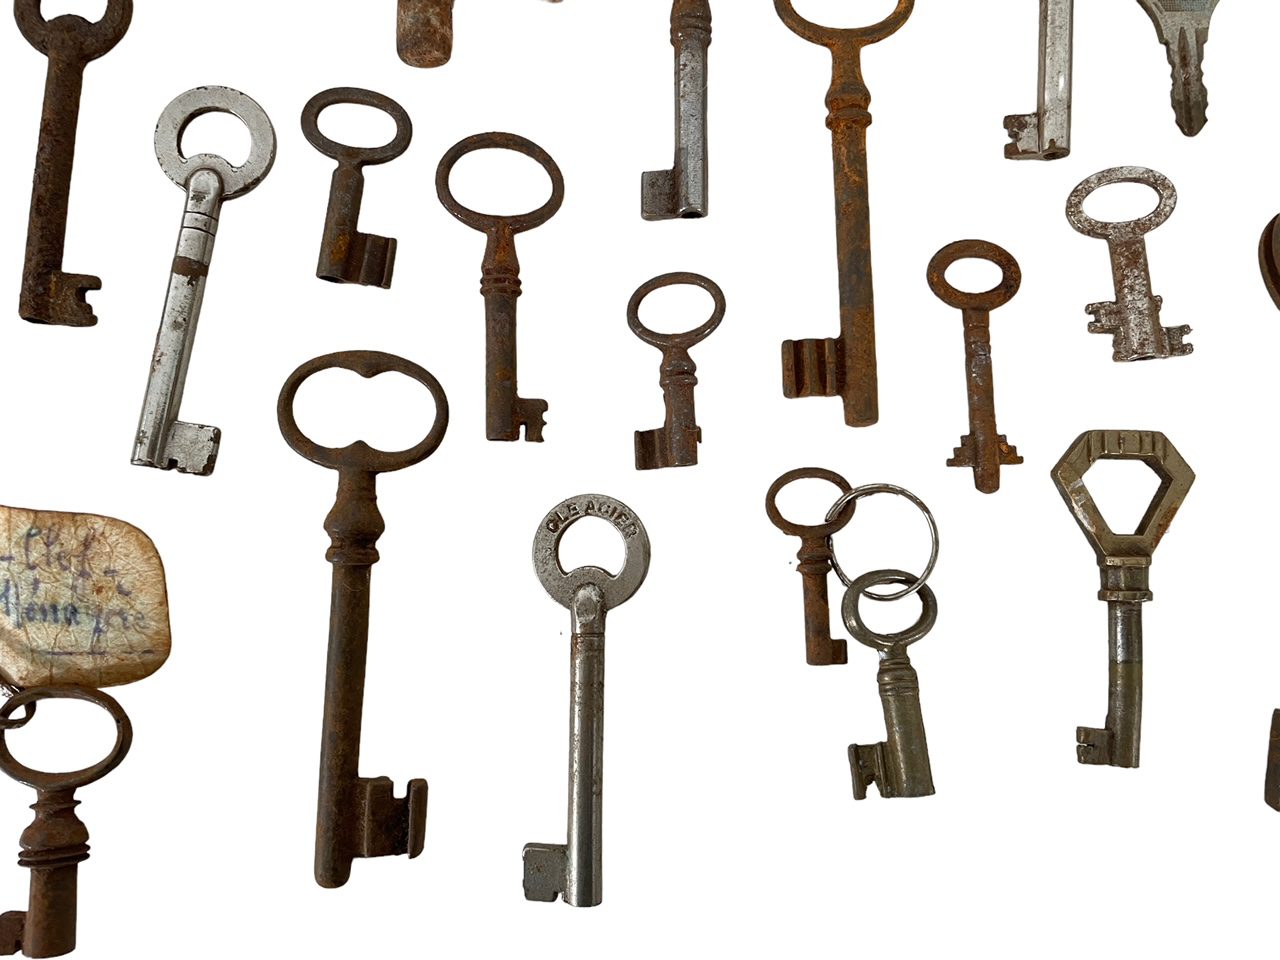 Old Key Antique Keys 1960 Vintage Keys Rustic Keys Vintage Keys Collectibles